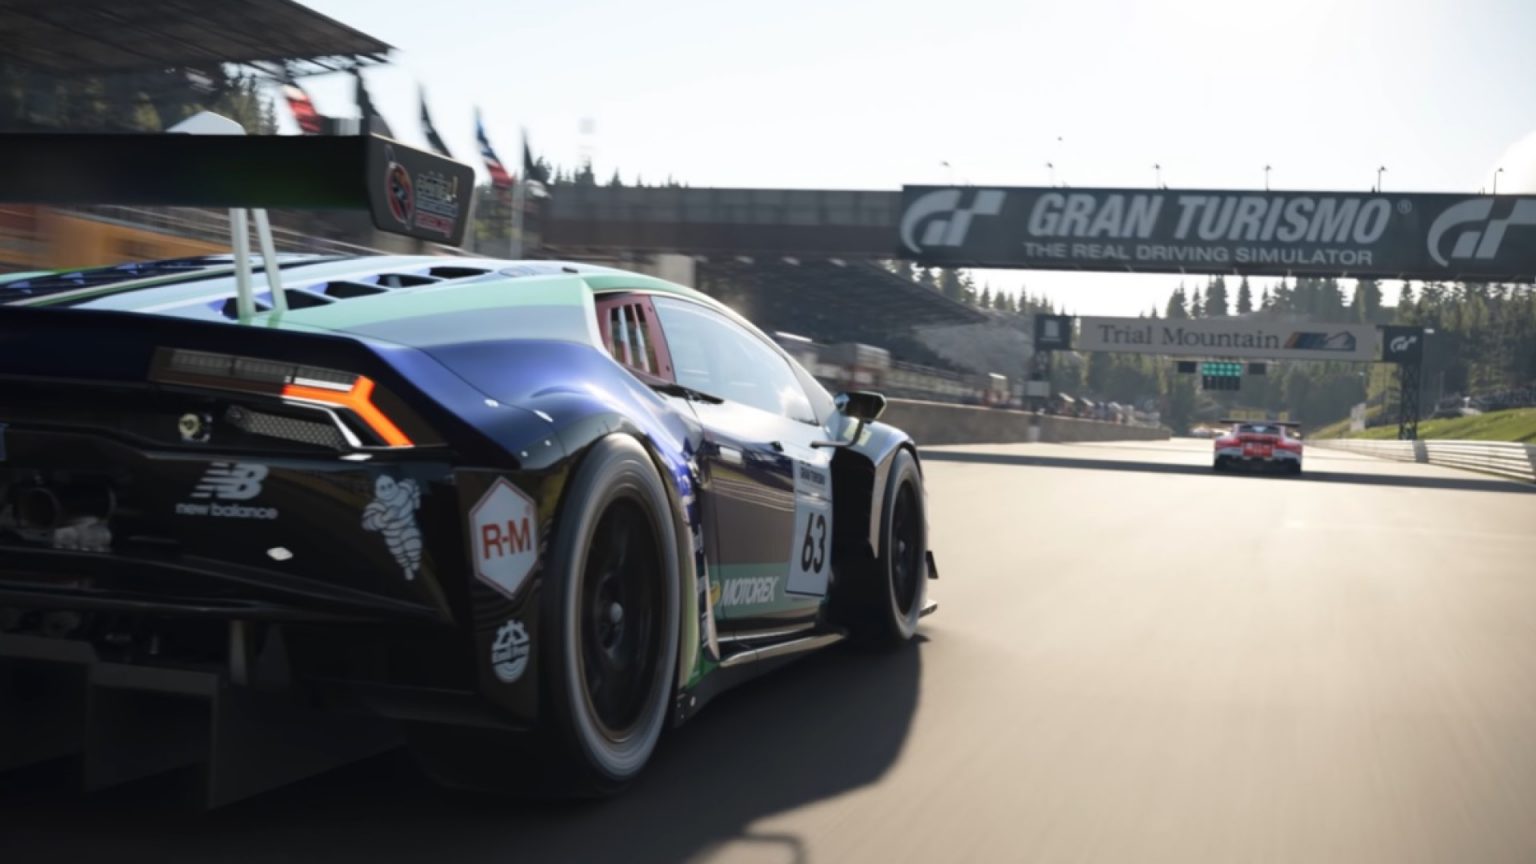 I begyndelsen af august vil Gran Turismo 7 modtage fire nye biler, - siger producenten af serien